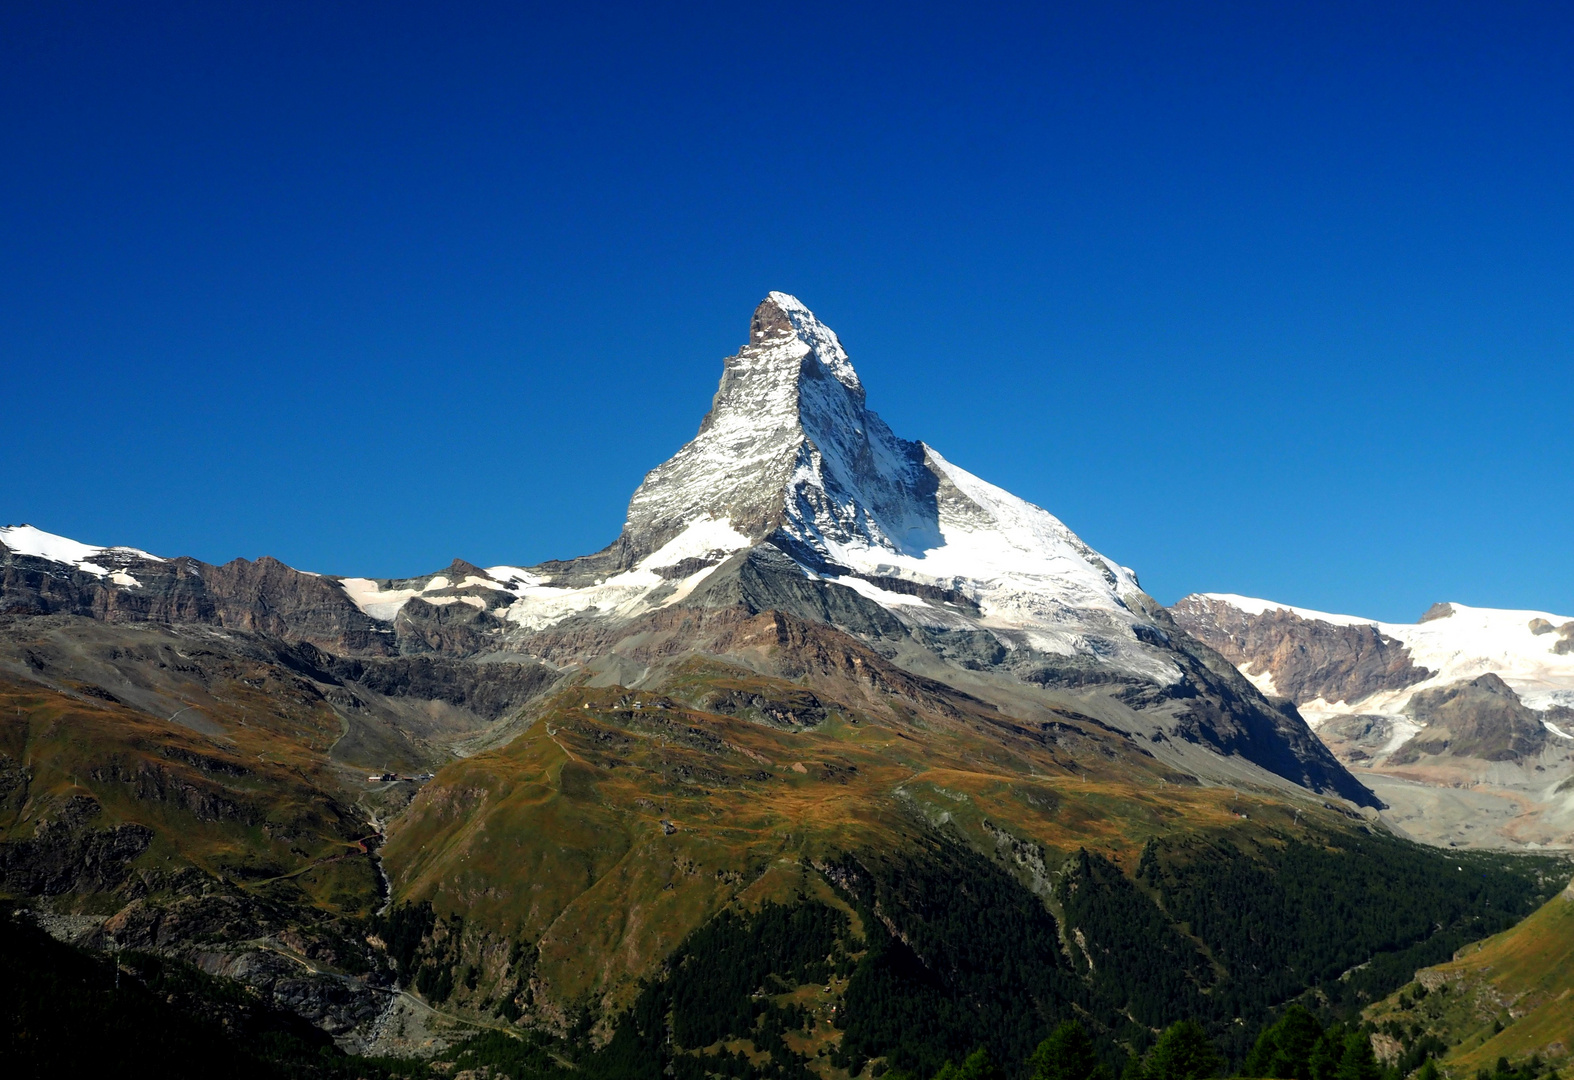 EIn Tag in Zermatt- Matterhorn 4